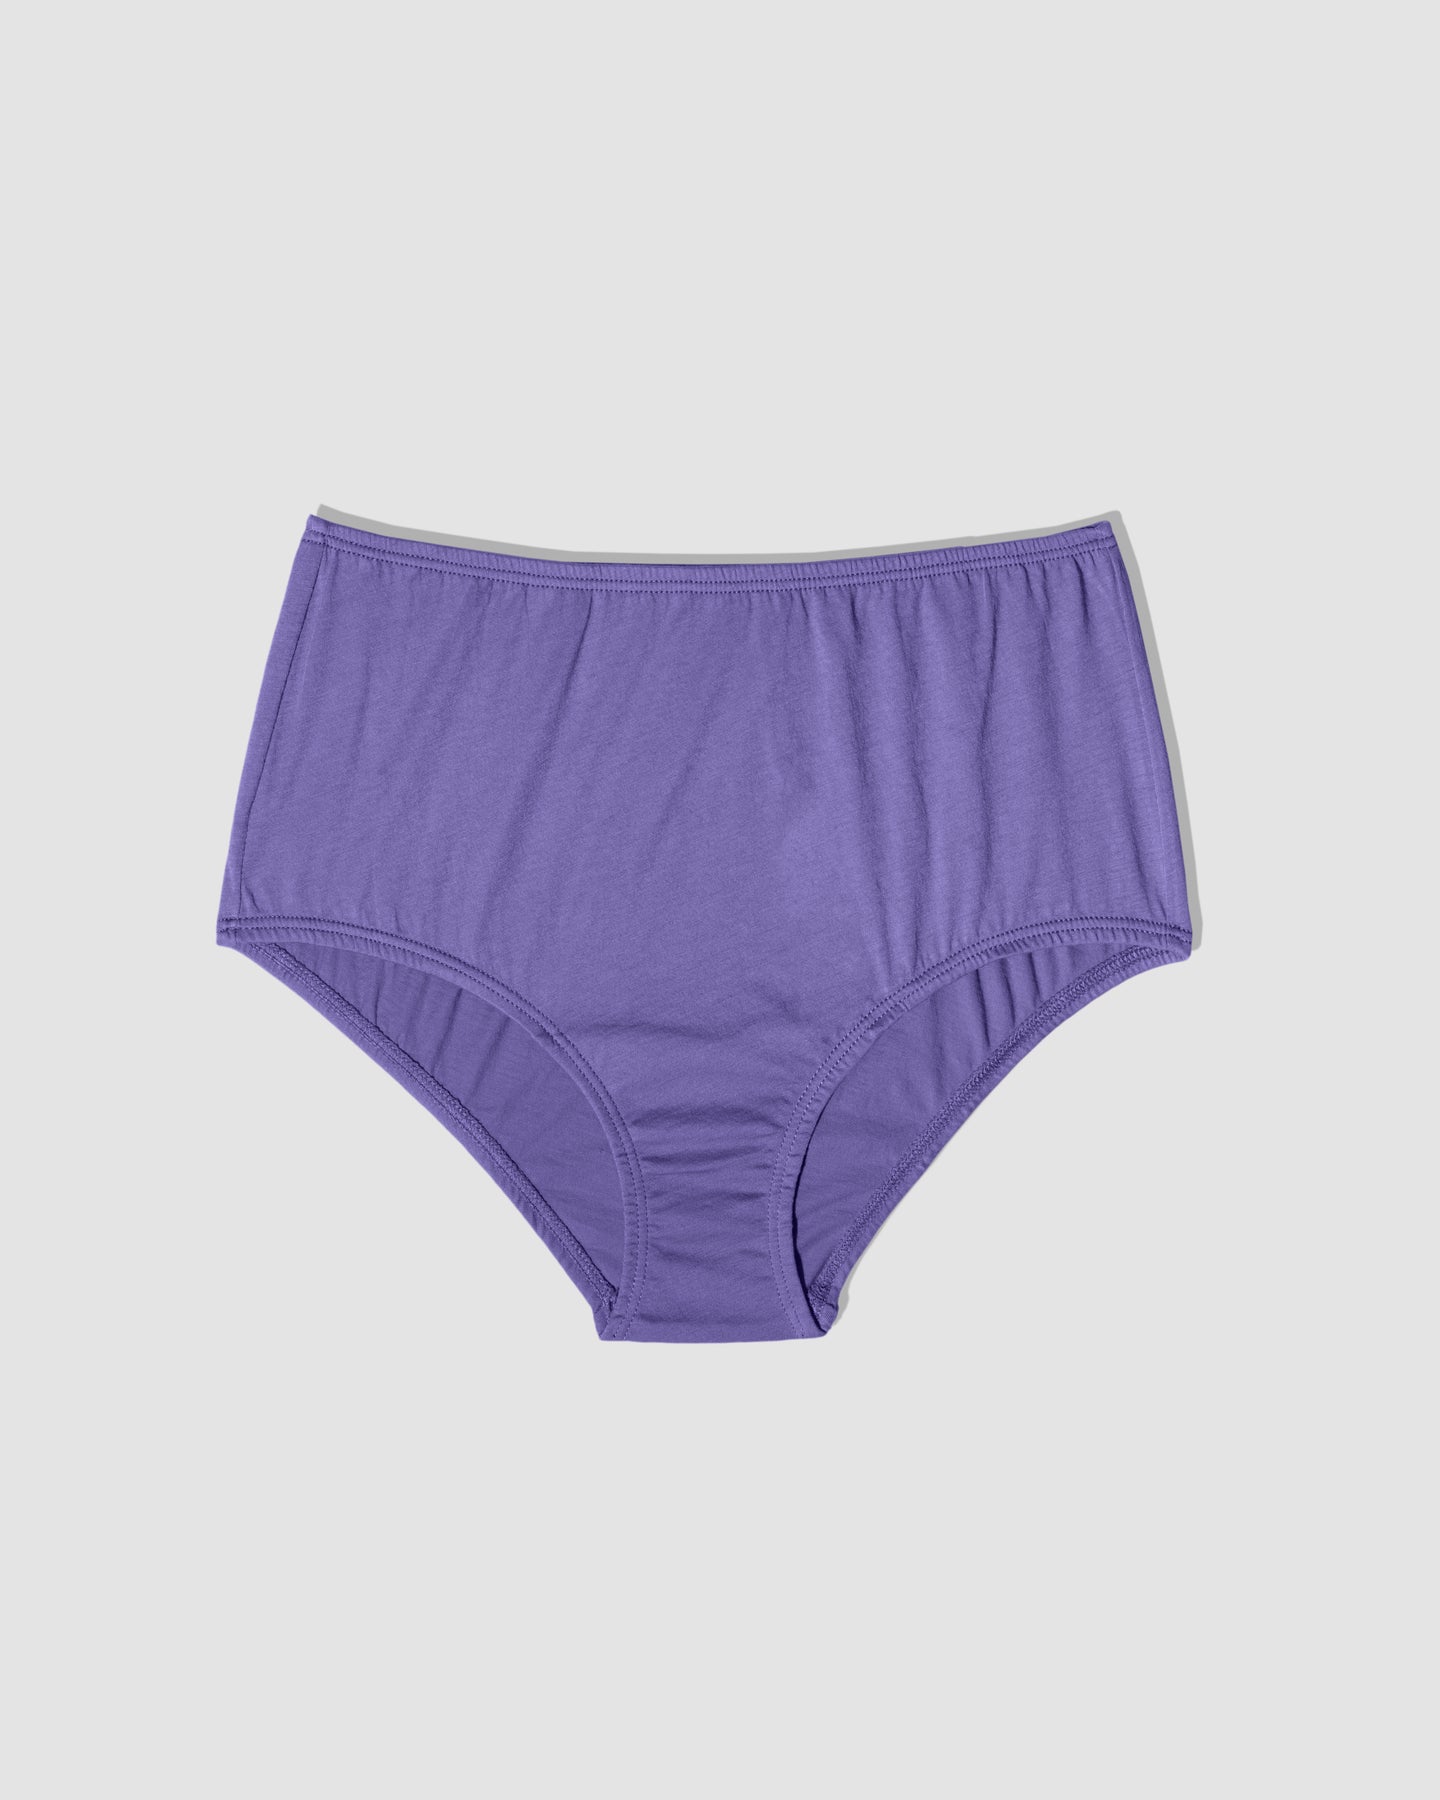 HUPOM Organic Cotton Underwear Womens Underwear For Women High